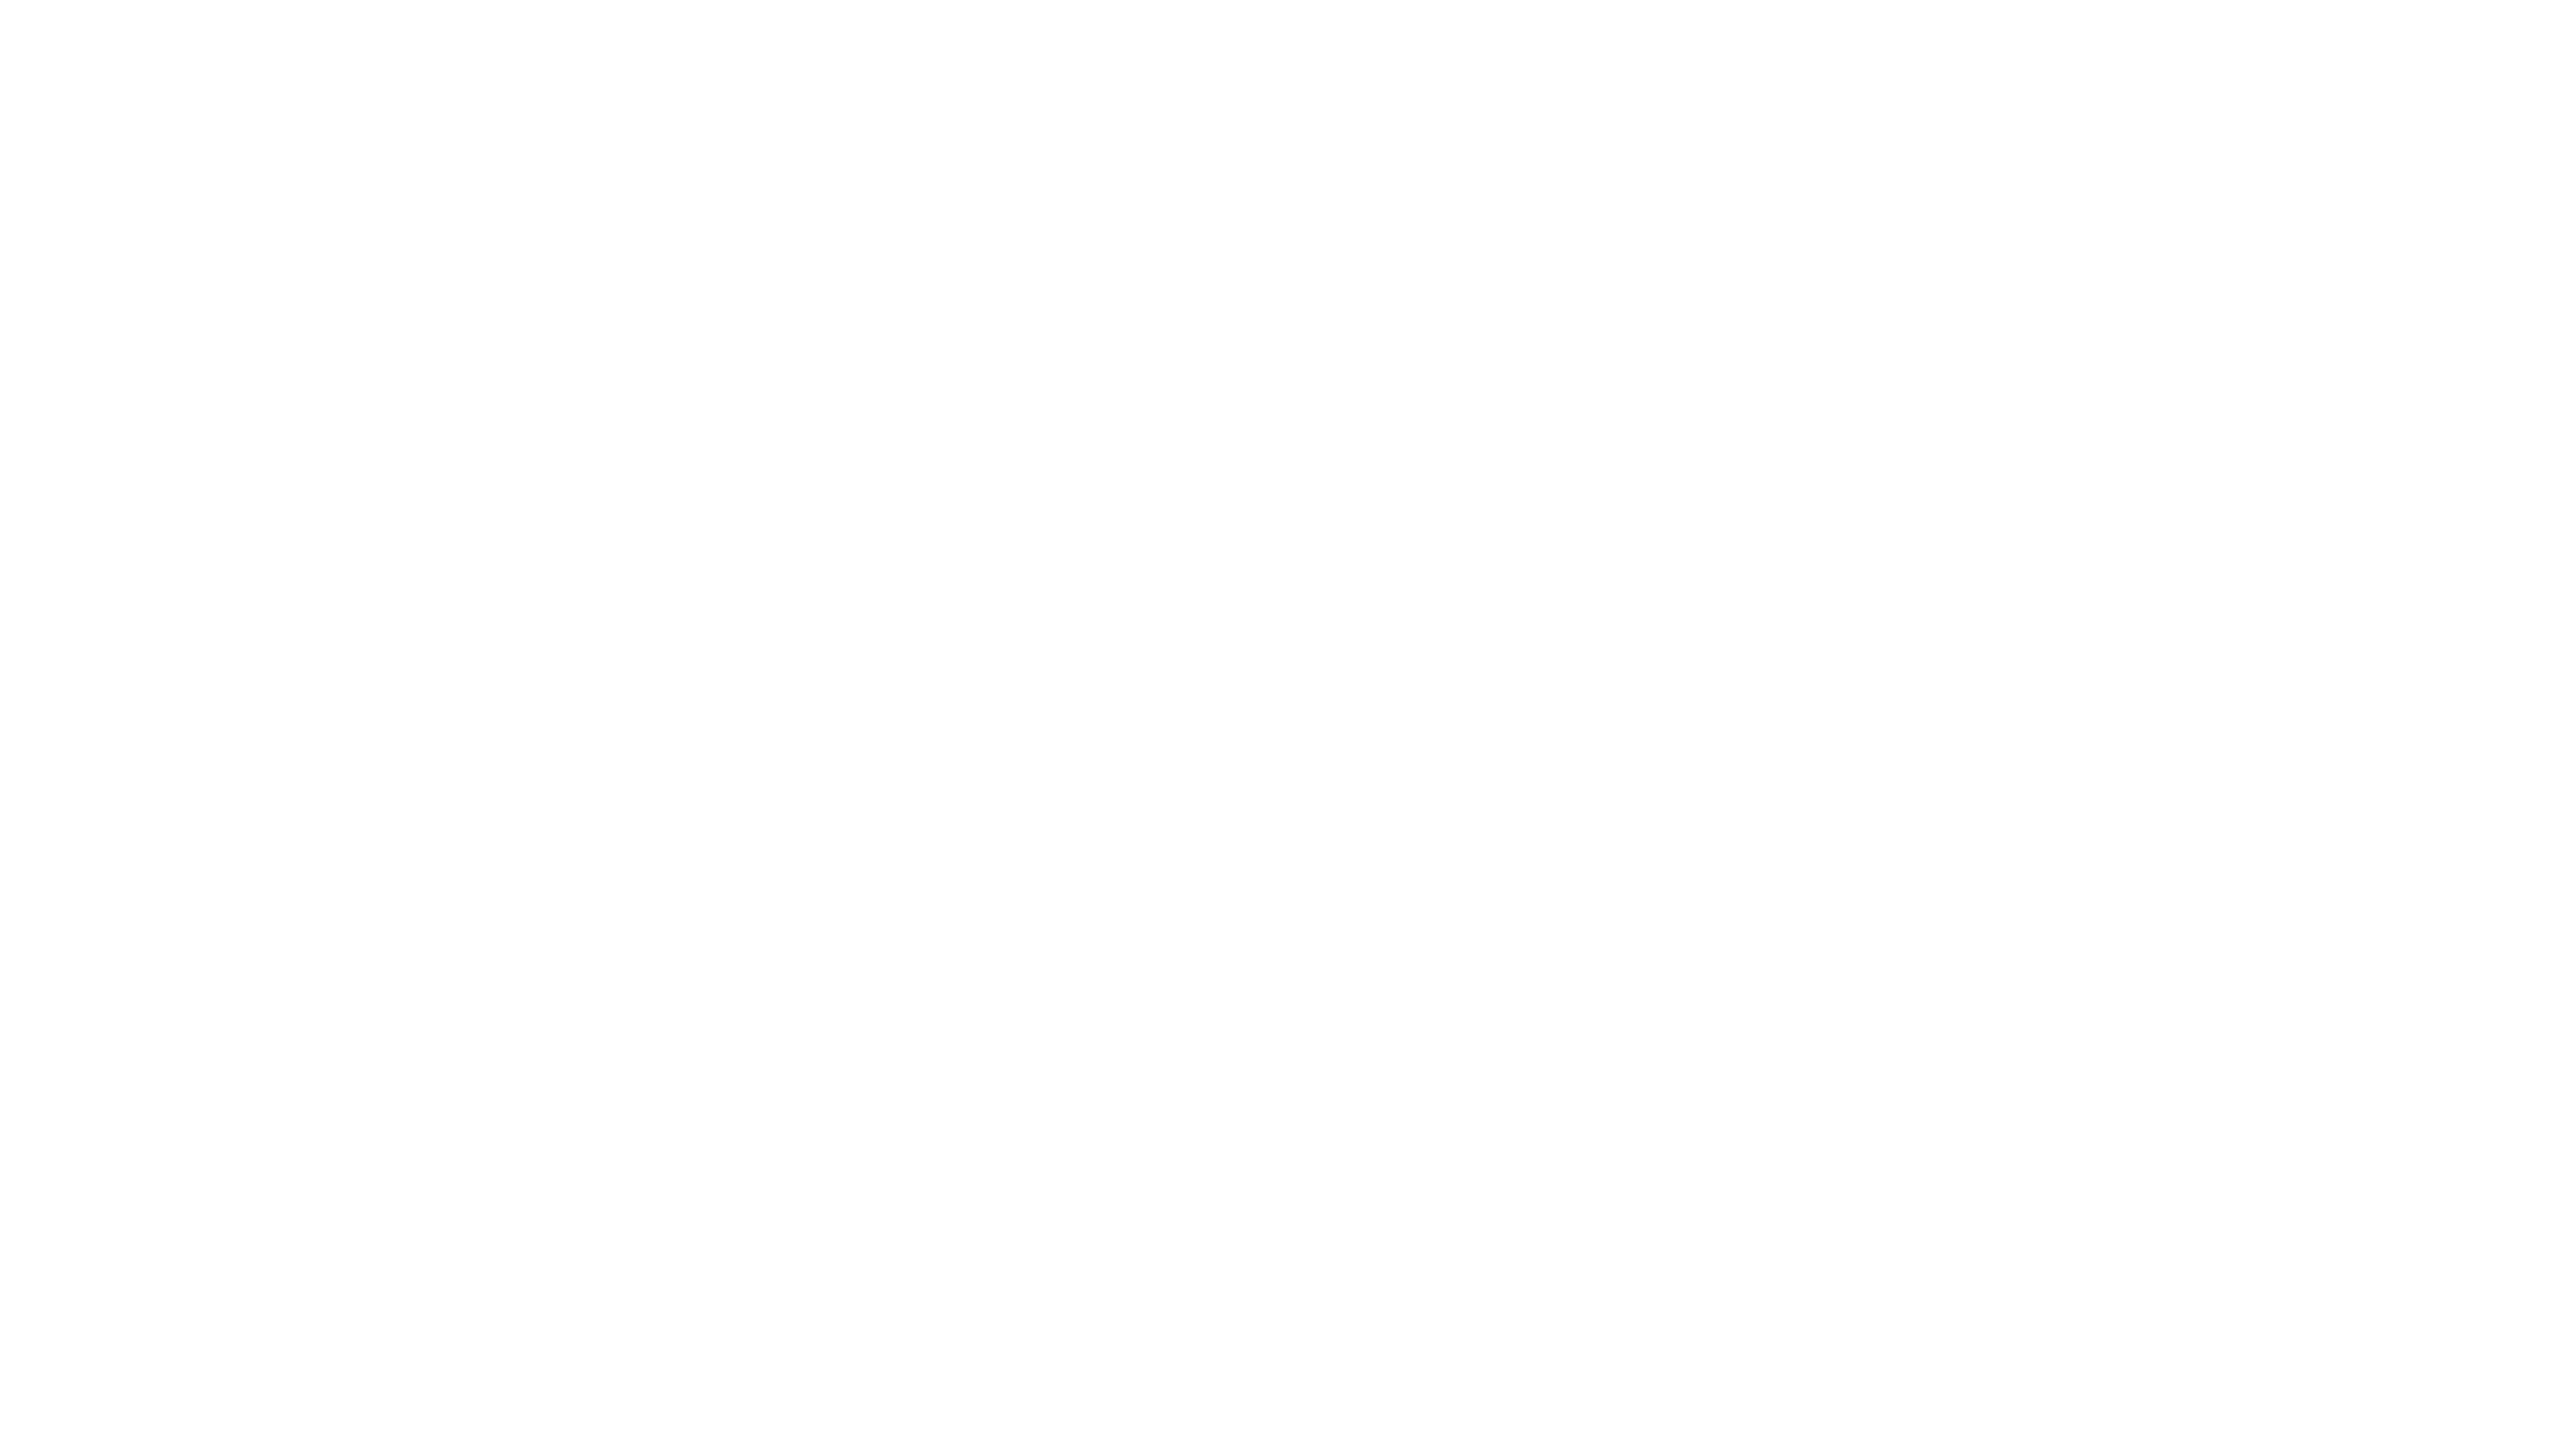 epix logo